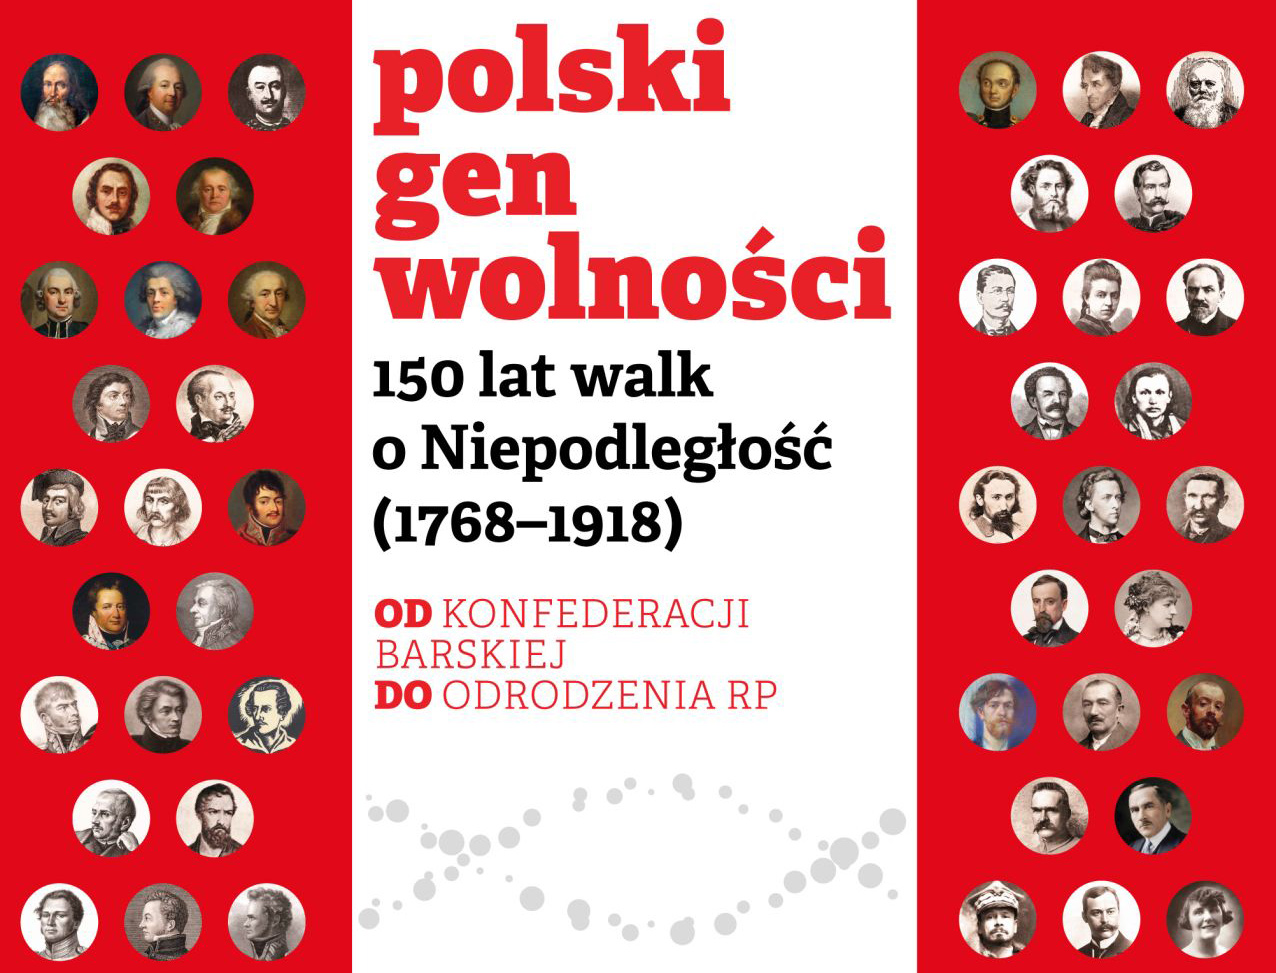 Polski gen wolności